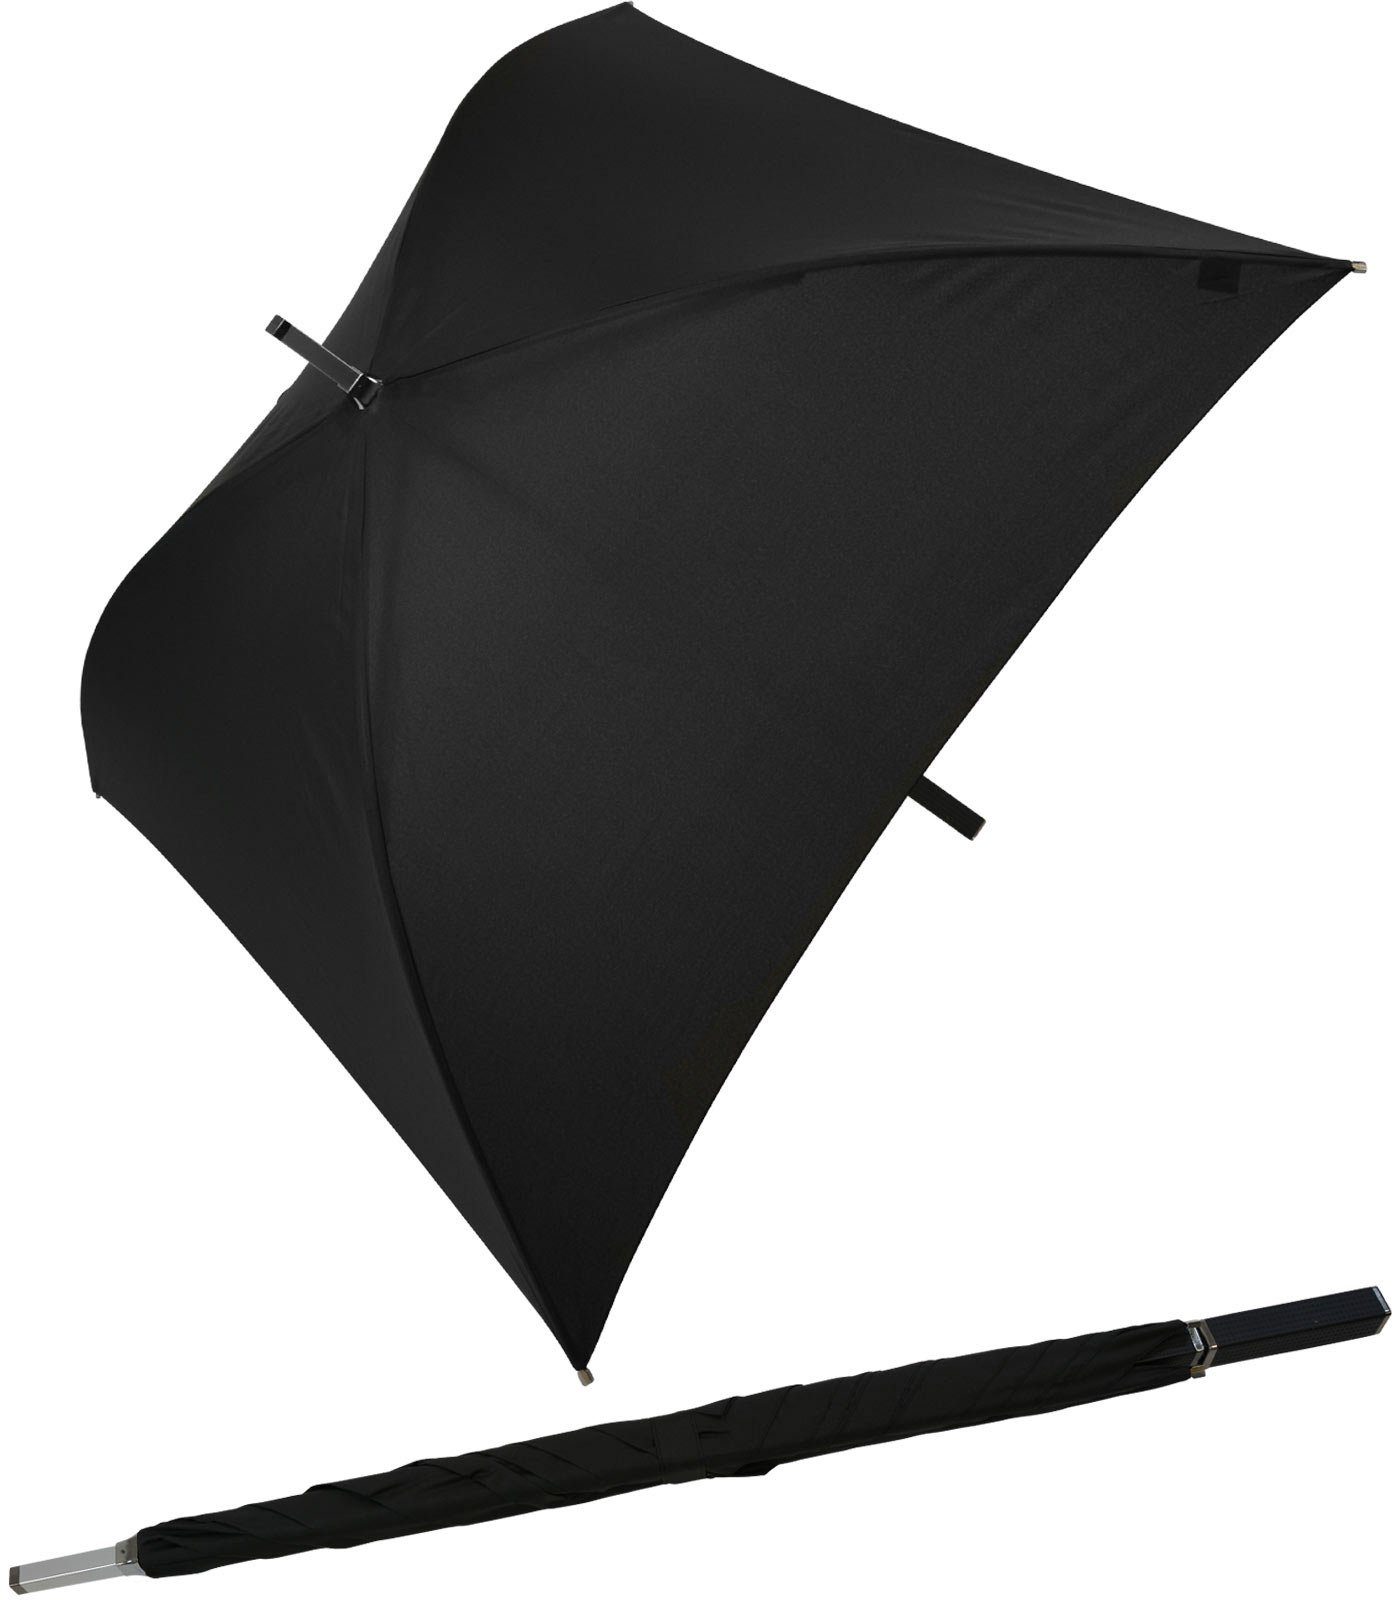 wird auftauchen! Impliva Langregenschirm All Square® voll besondere quadratischer ganz der schwarz Regenschirm, Regenschirm